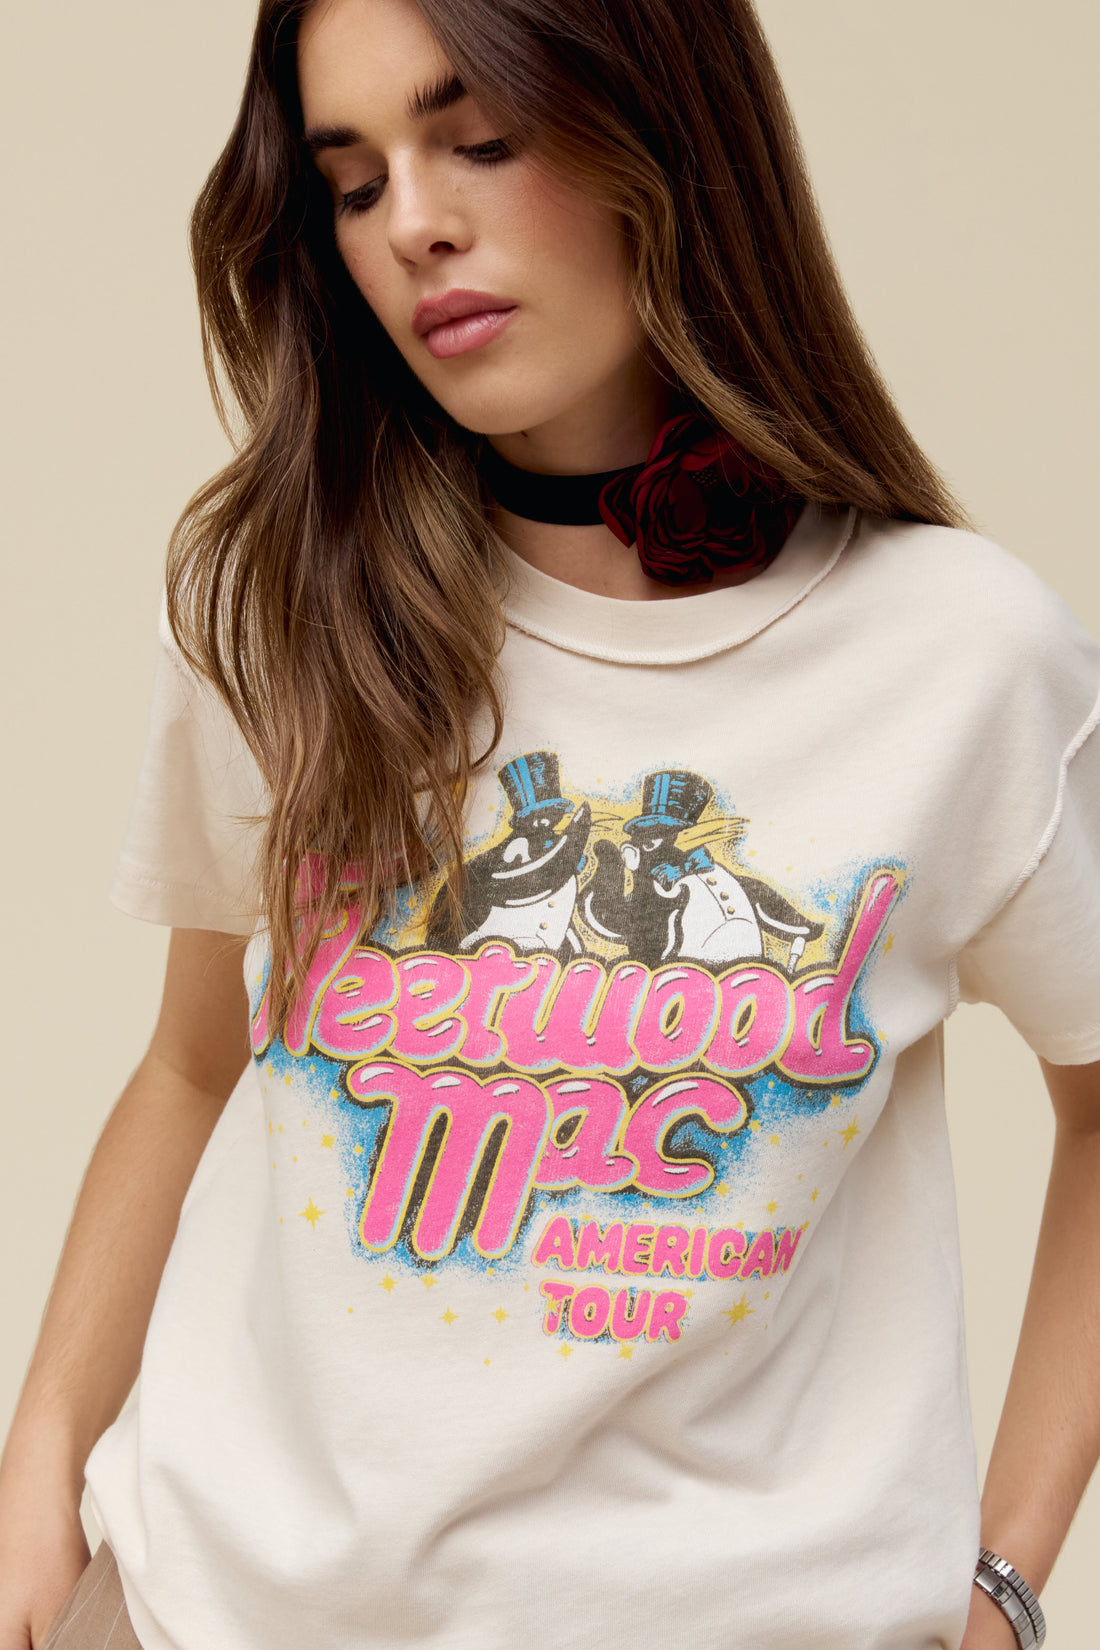 데이드리머 FLEETWOOD MAC 아메리칸 투어 리버스 티셔츠 여성울랄라 편집샵